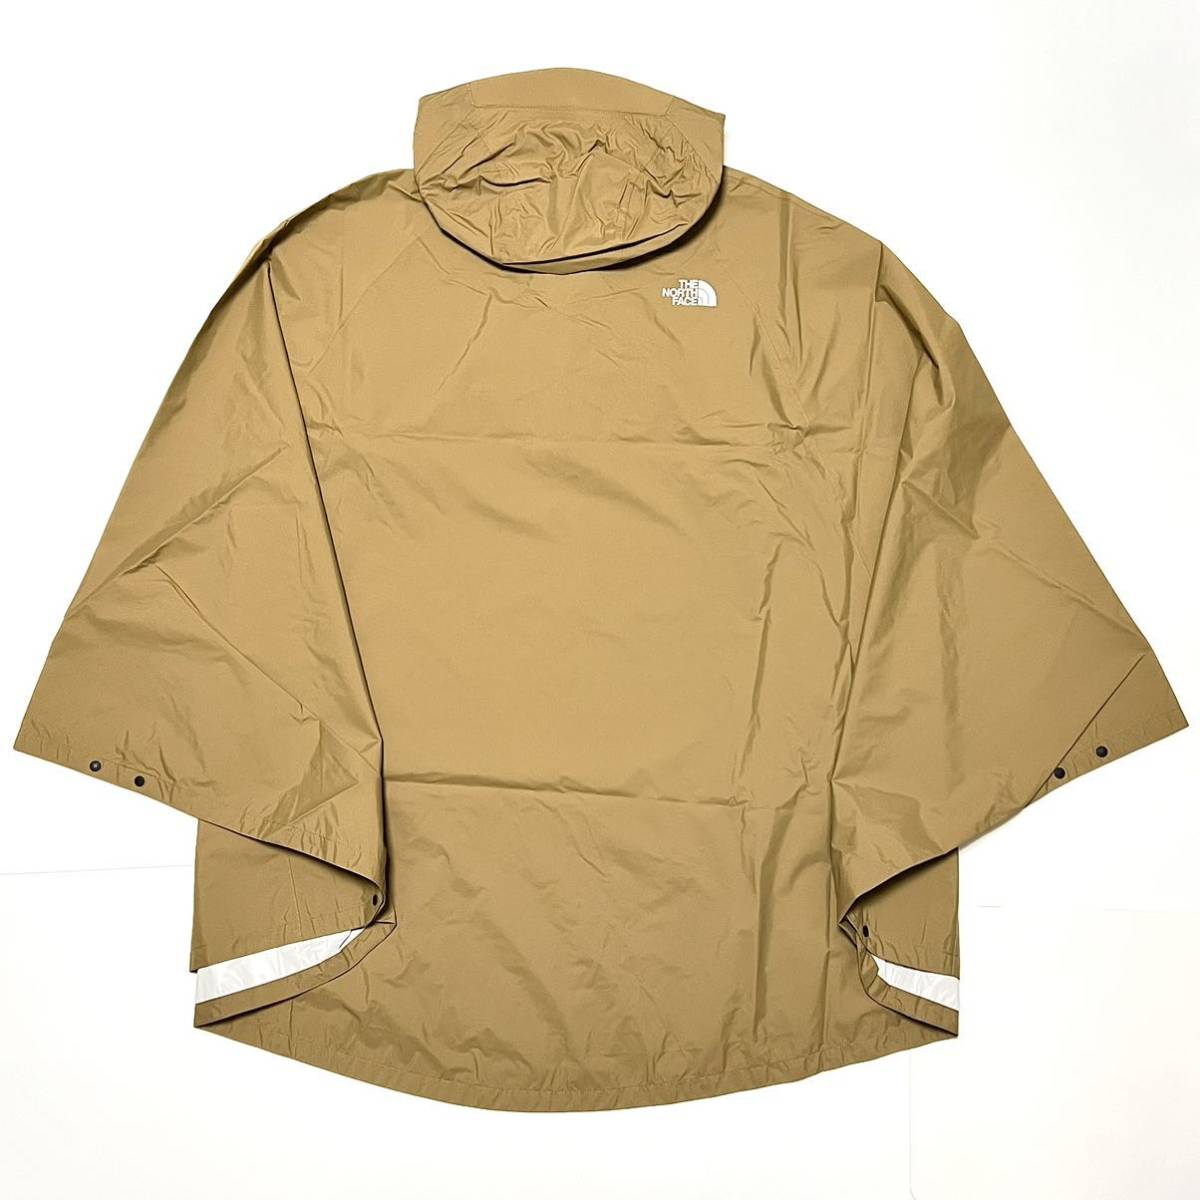 M North Face доступ дождь пончо бежевый непромокаемая одежда накидка чай язык ACCESS Poncho доступ пончо RAIN непромокаемая одежда Kappa 